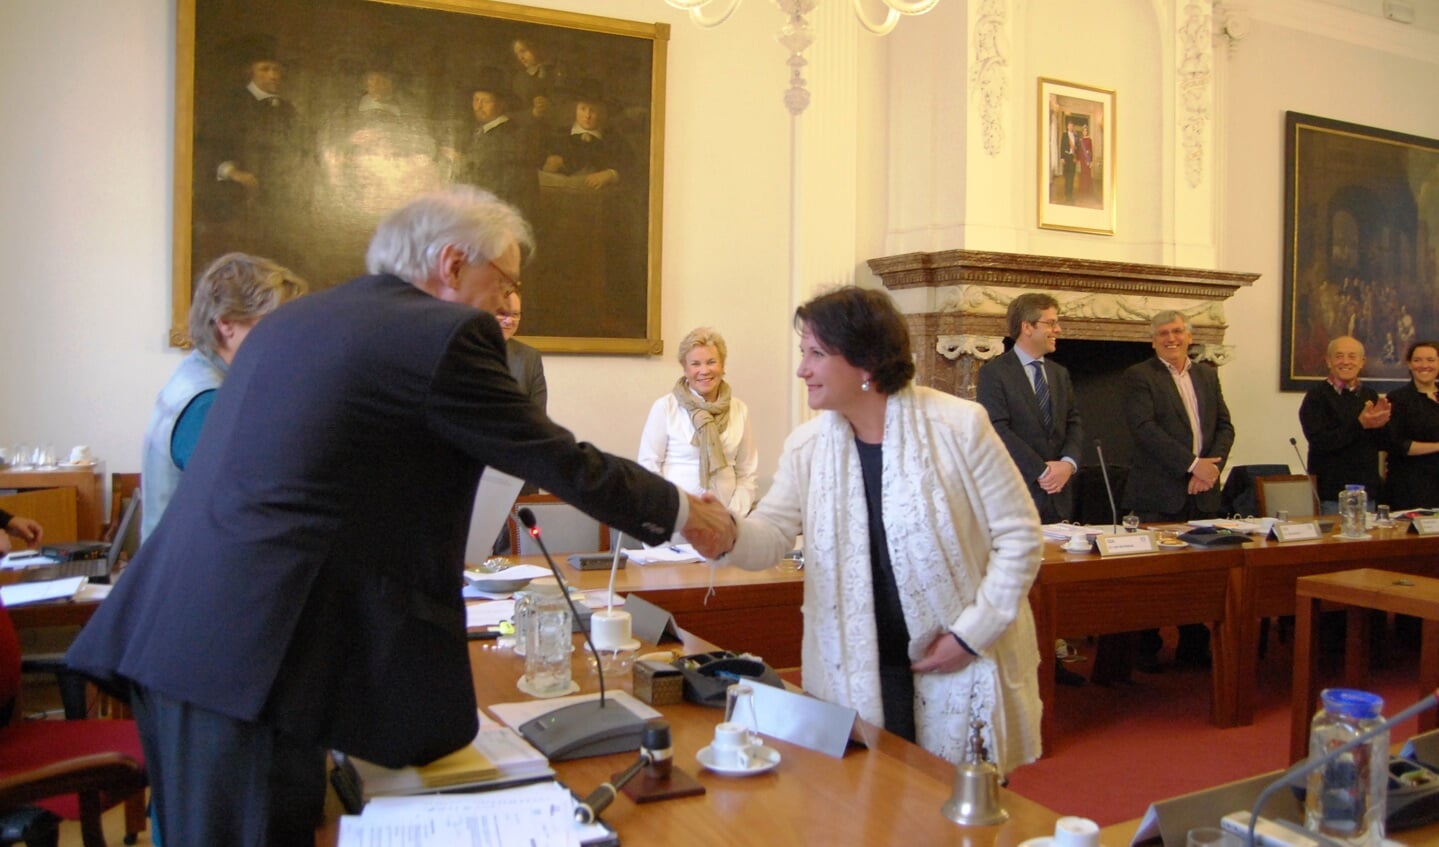 De nieuwe burgemeester feliciteert Bianca Sikma-Rootsaert met haar commissielidmaatschap 